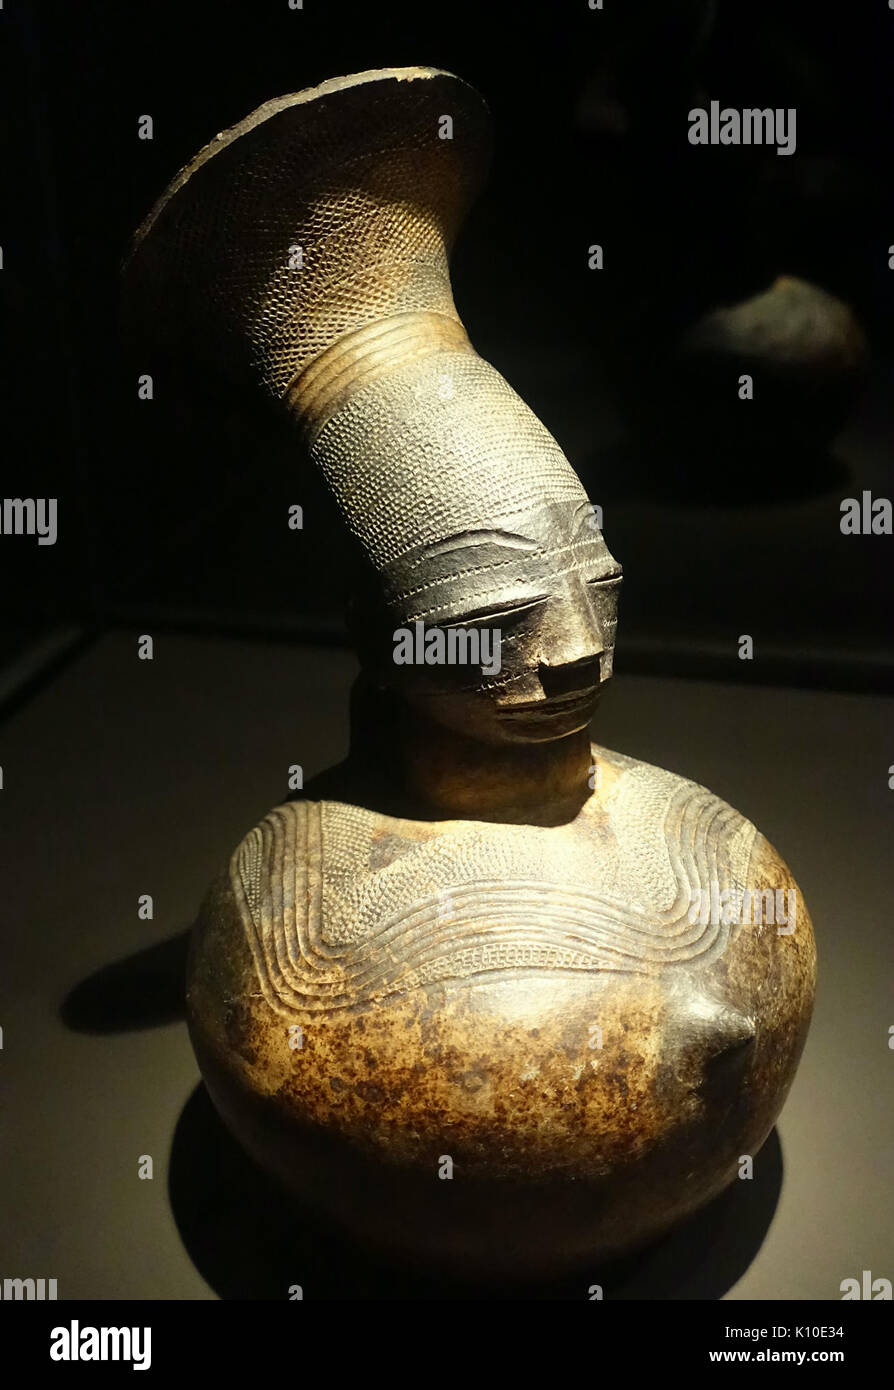 Palm antropomorfo recipiente di vino, la Repubblica democratica del Congo, Mangbetu, ventesimo secolo D.C., ceramica museo etnologico, Berlino DSC02195 Foto Stock